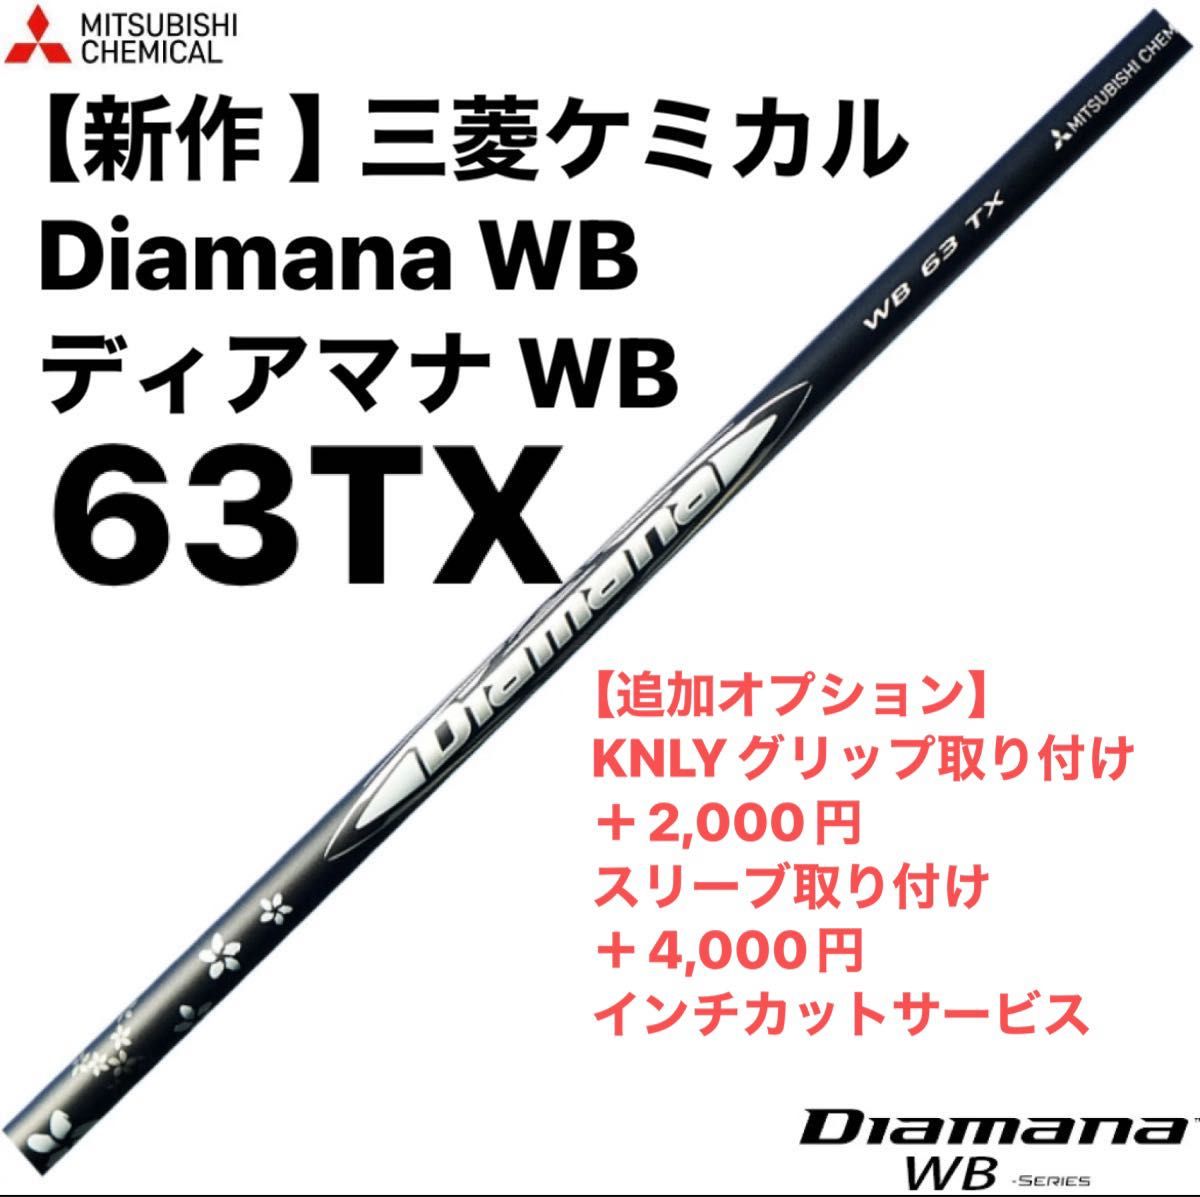 【新作 】三菱ケミカル Diamana WB ディアマナ WB  63TX  シャフト単品